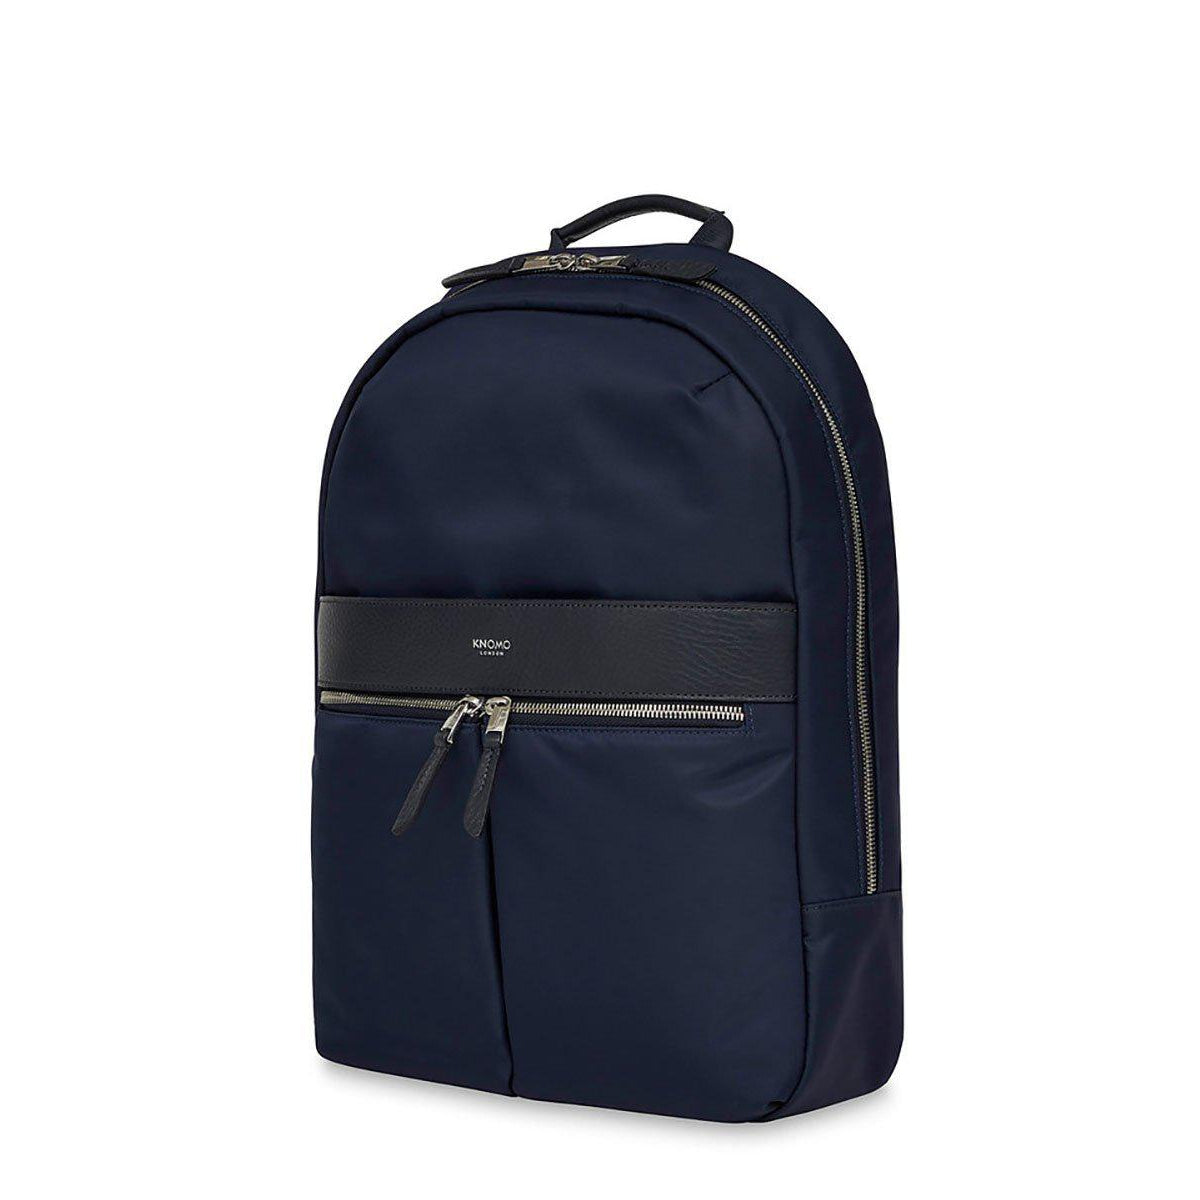 Knomo Beauchamp Backpack for 14" Laptops - Navy Blue